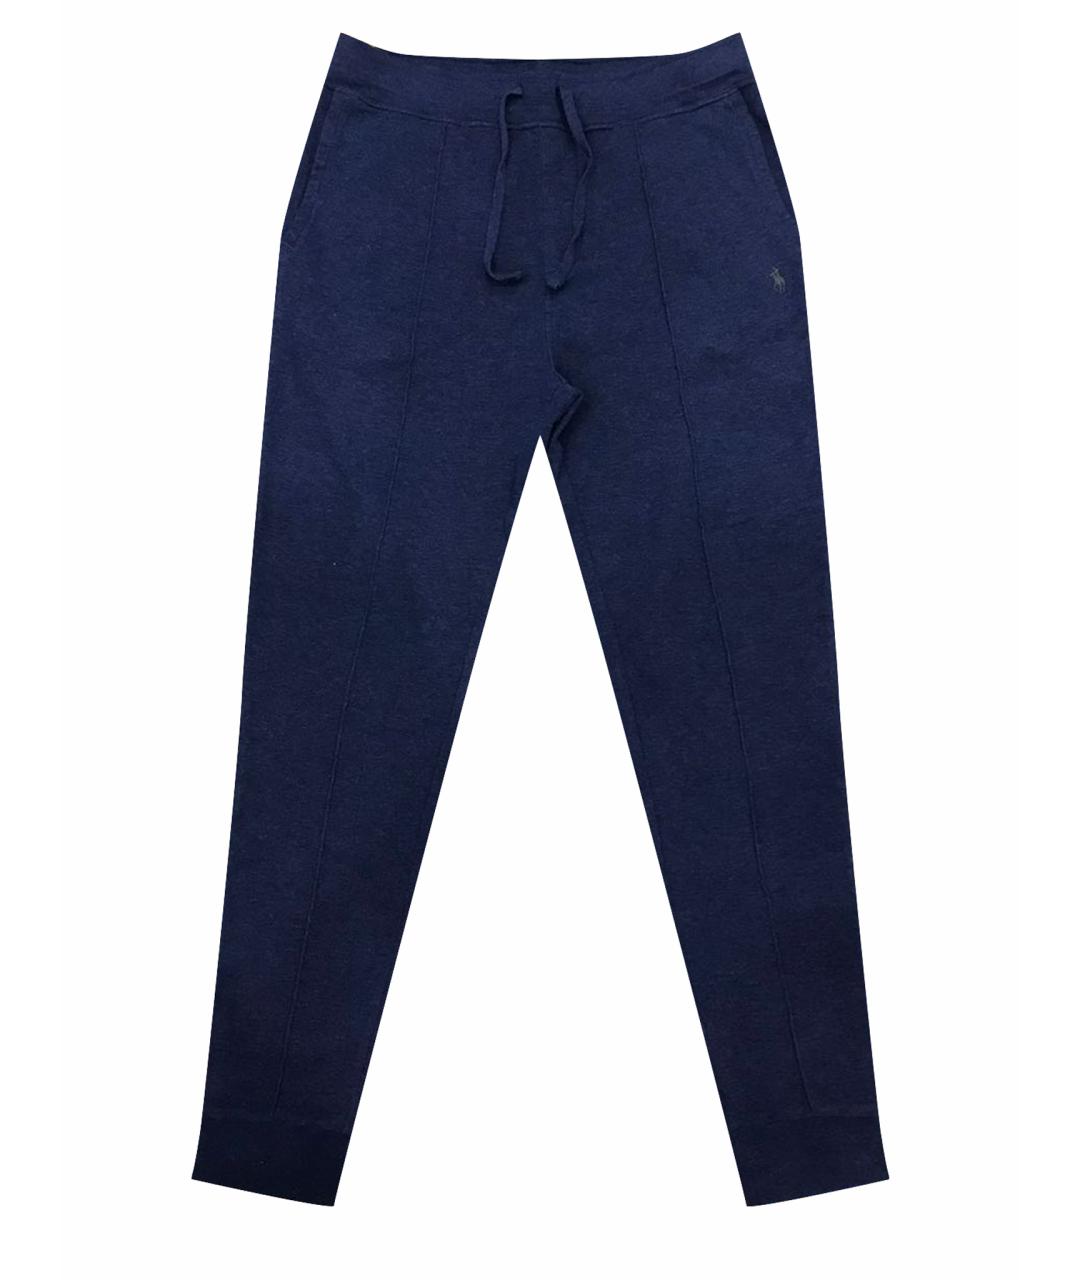 POLO RALPH LAUREN Темно-синие хлопковые повседневные брюки, фото 1